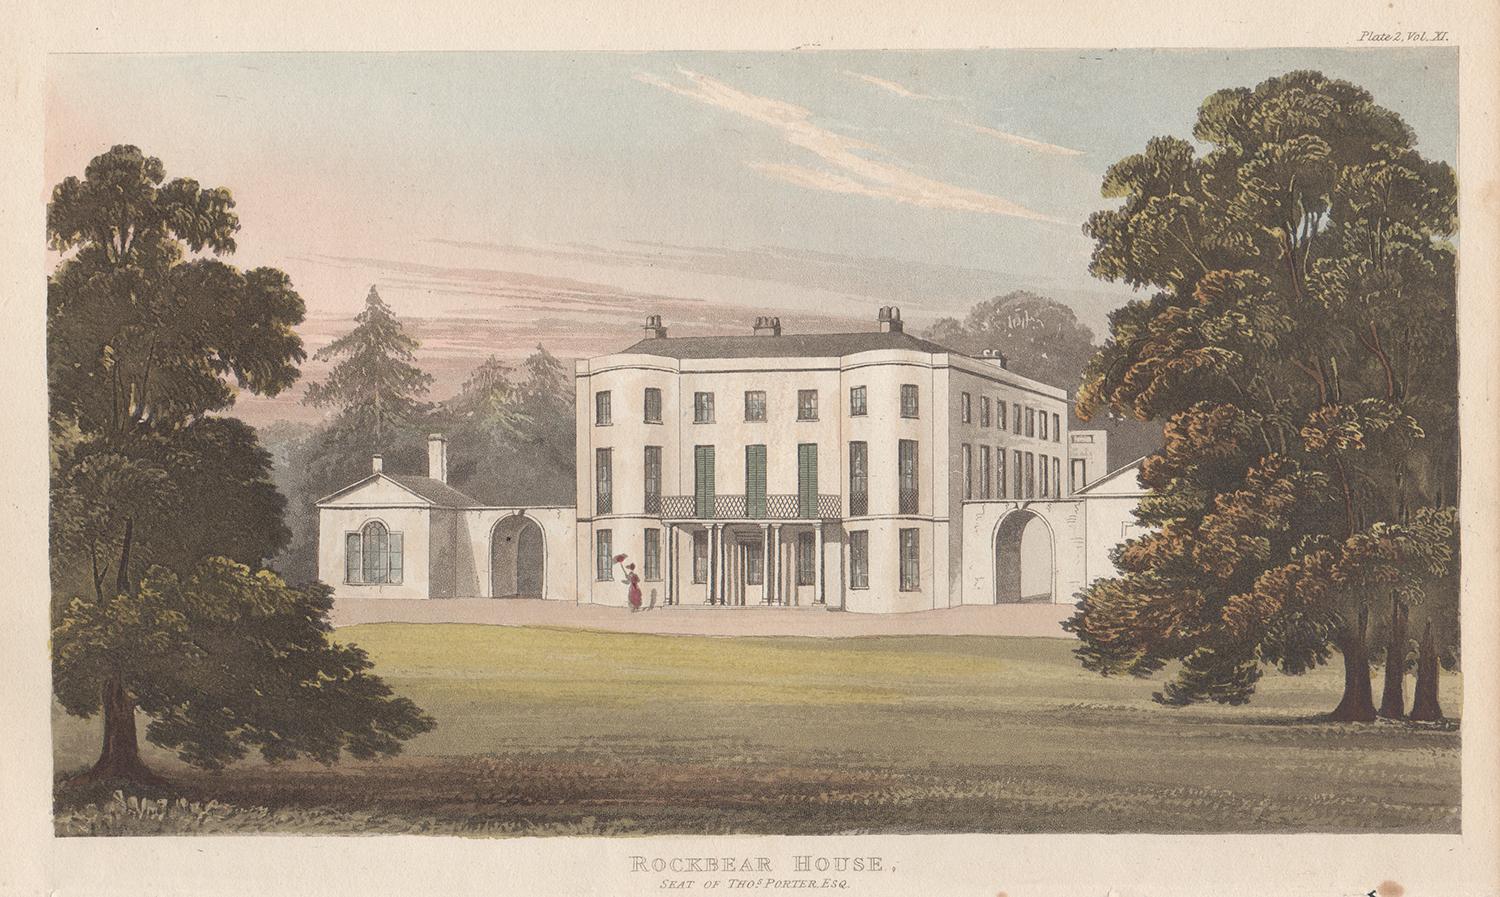 Landscape Print Unknown - Rockbear House, Devon, aquatinte de couleur d'une maison de campagne de style Régence anglaise, 1818